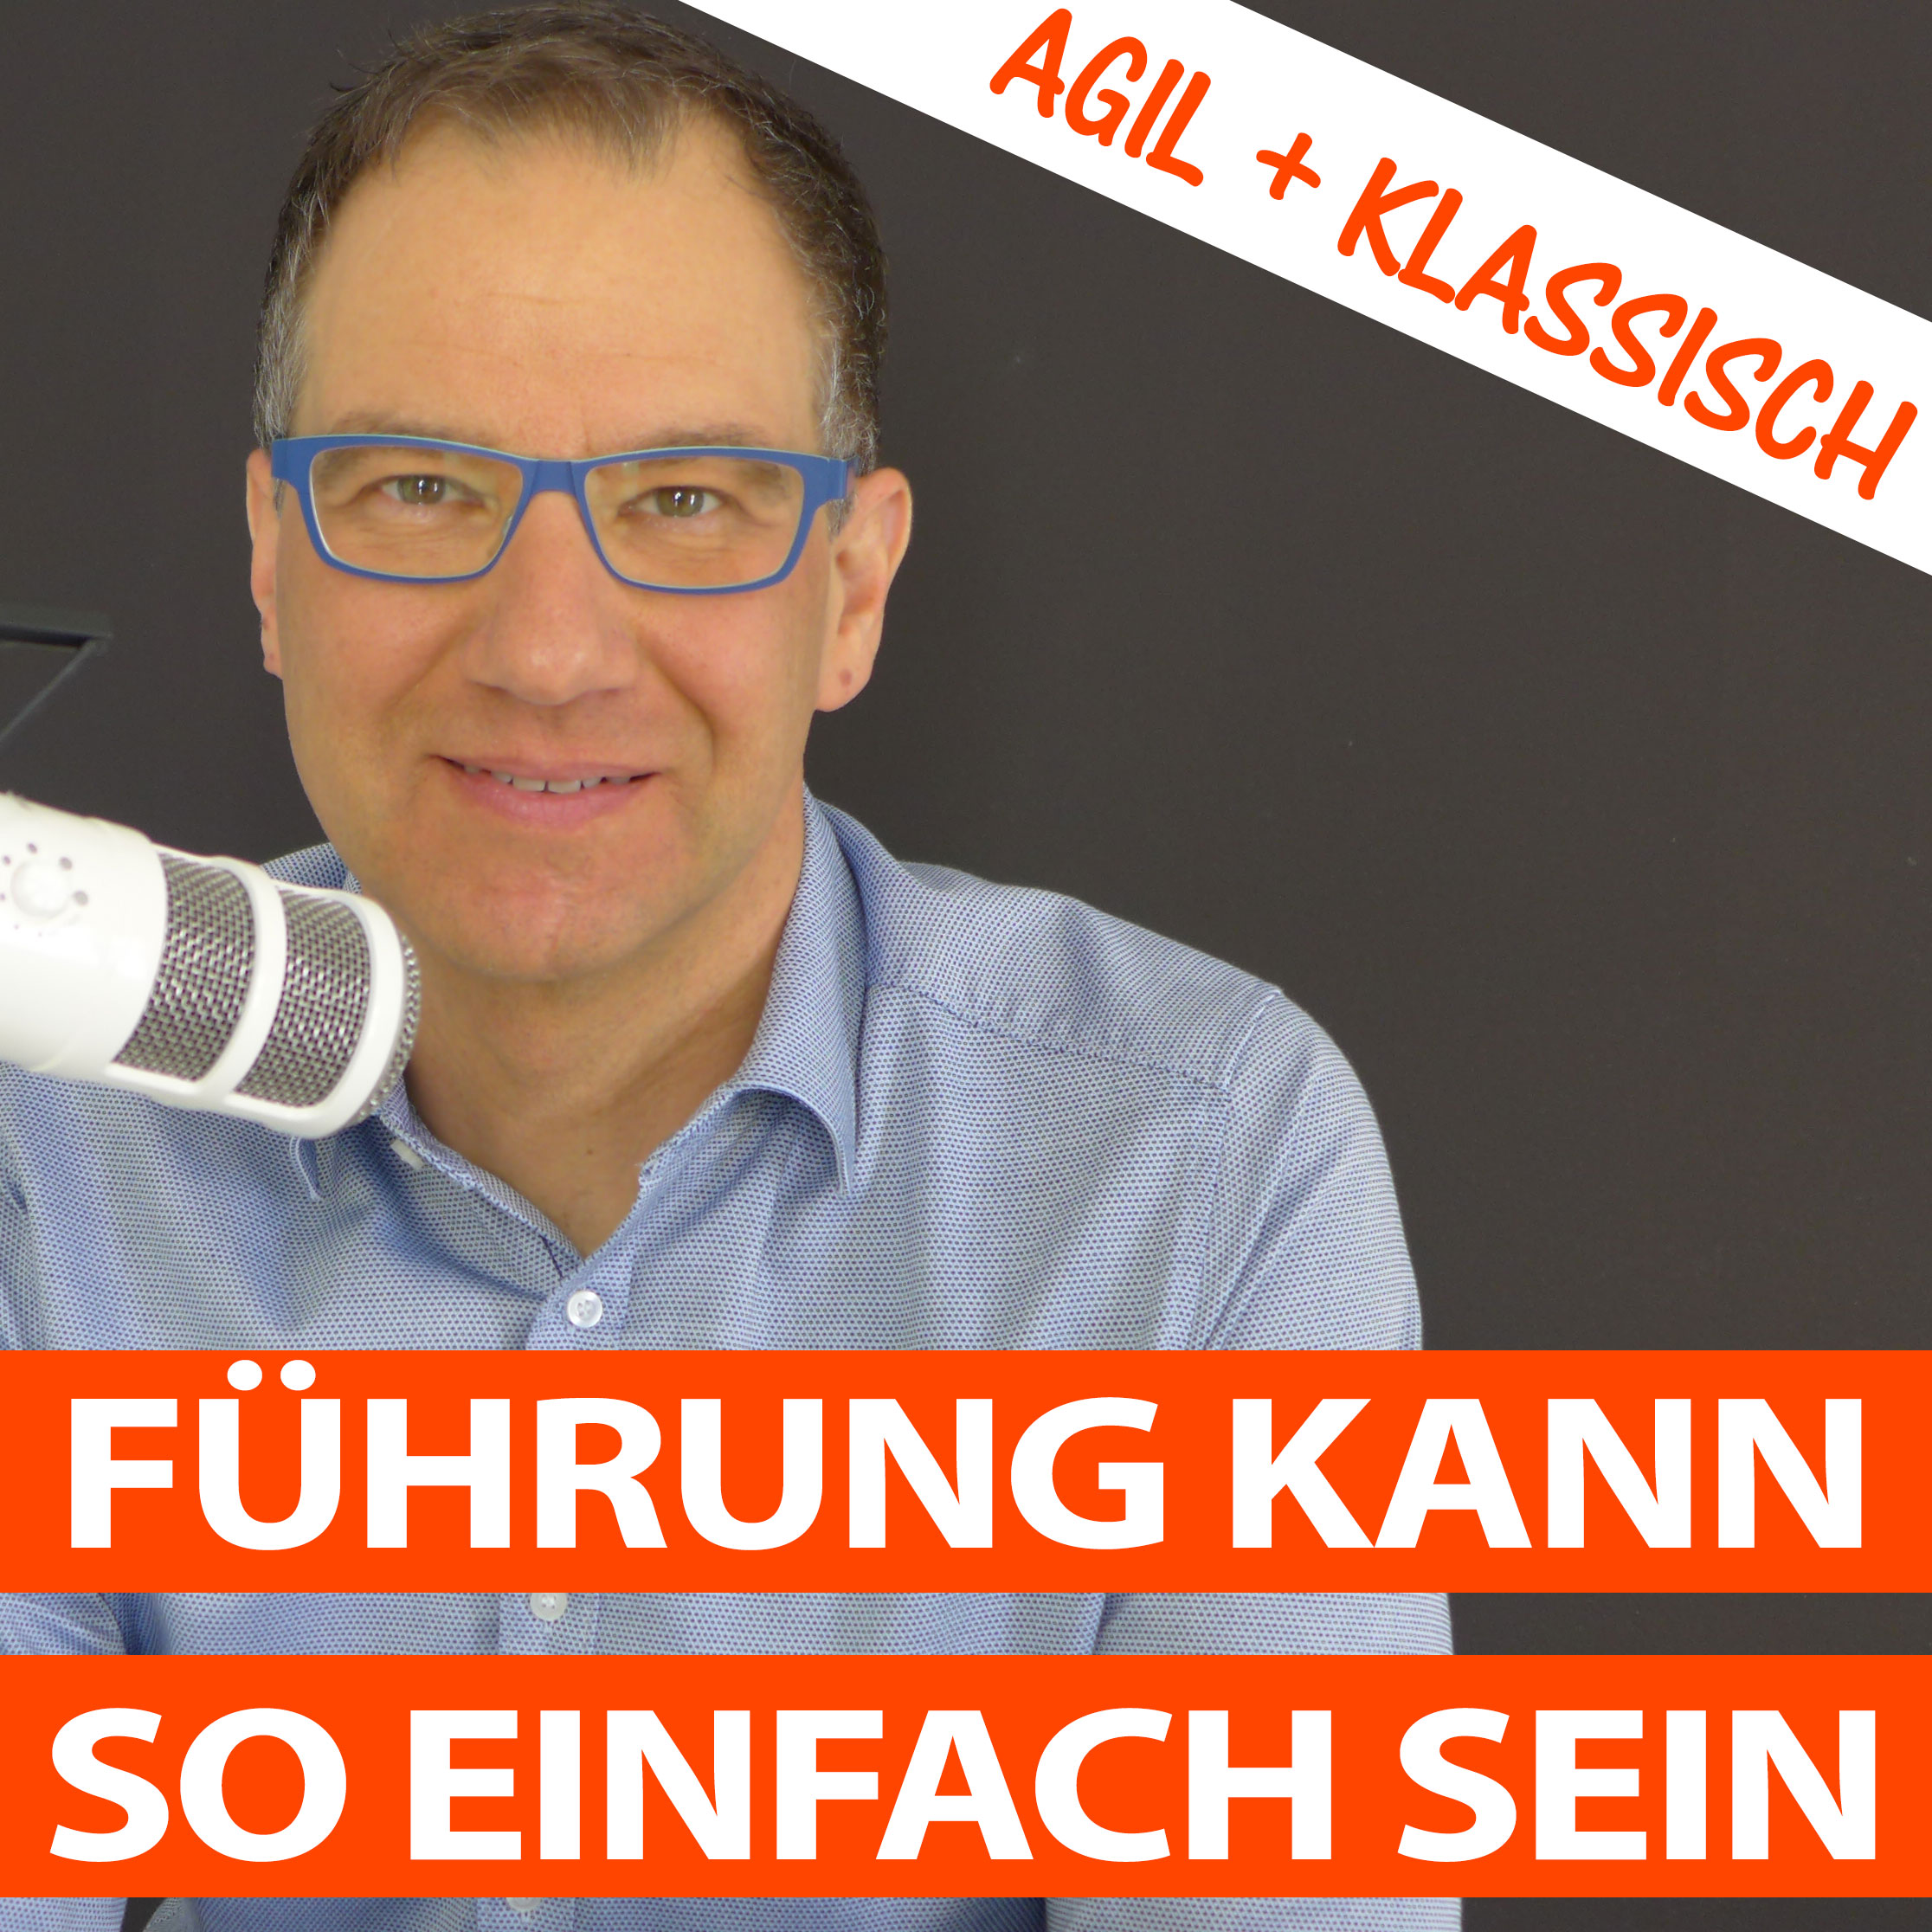 Fuehrung kann so einfach sein Podcast Marketing Club